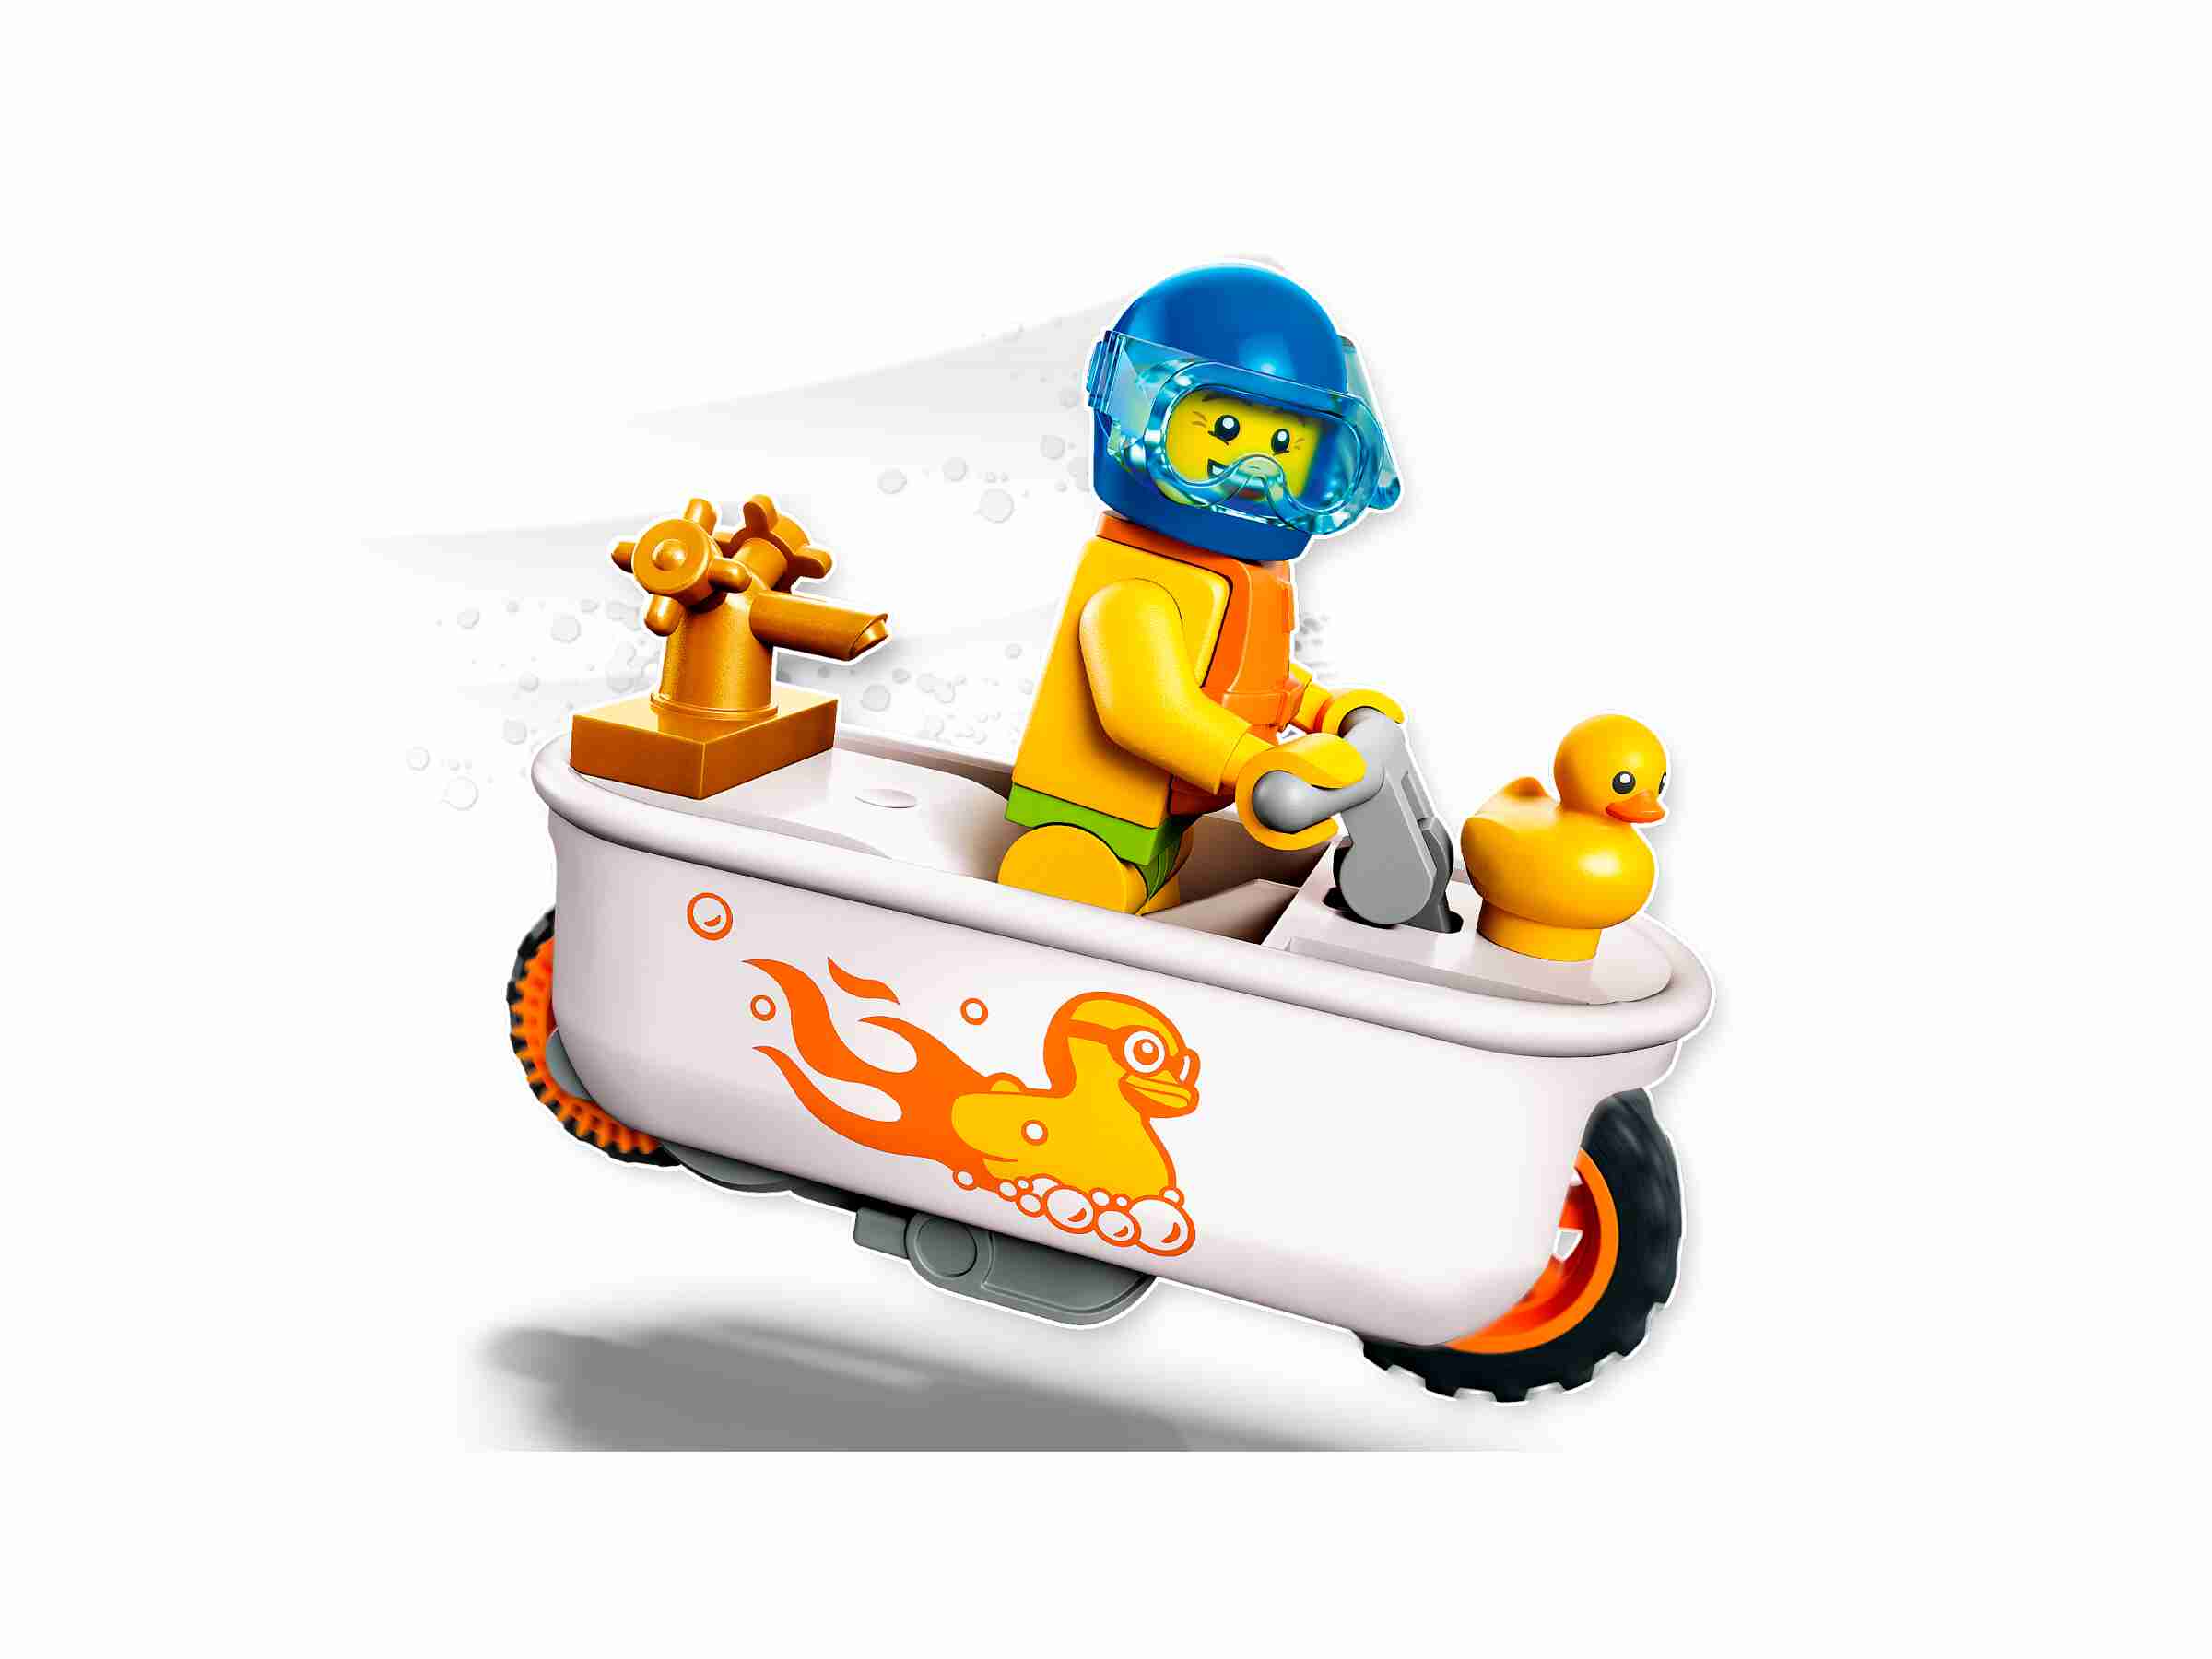 LEGO 60333 City Stuntz Badewannen-Stuntbike, Set mit Motorrad und Minifigur